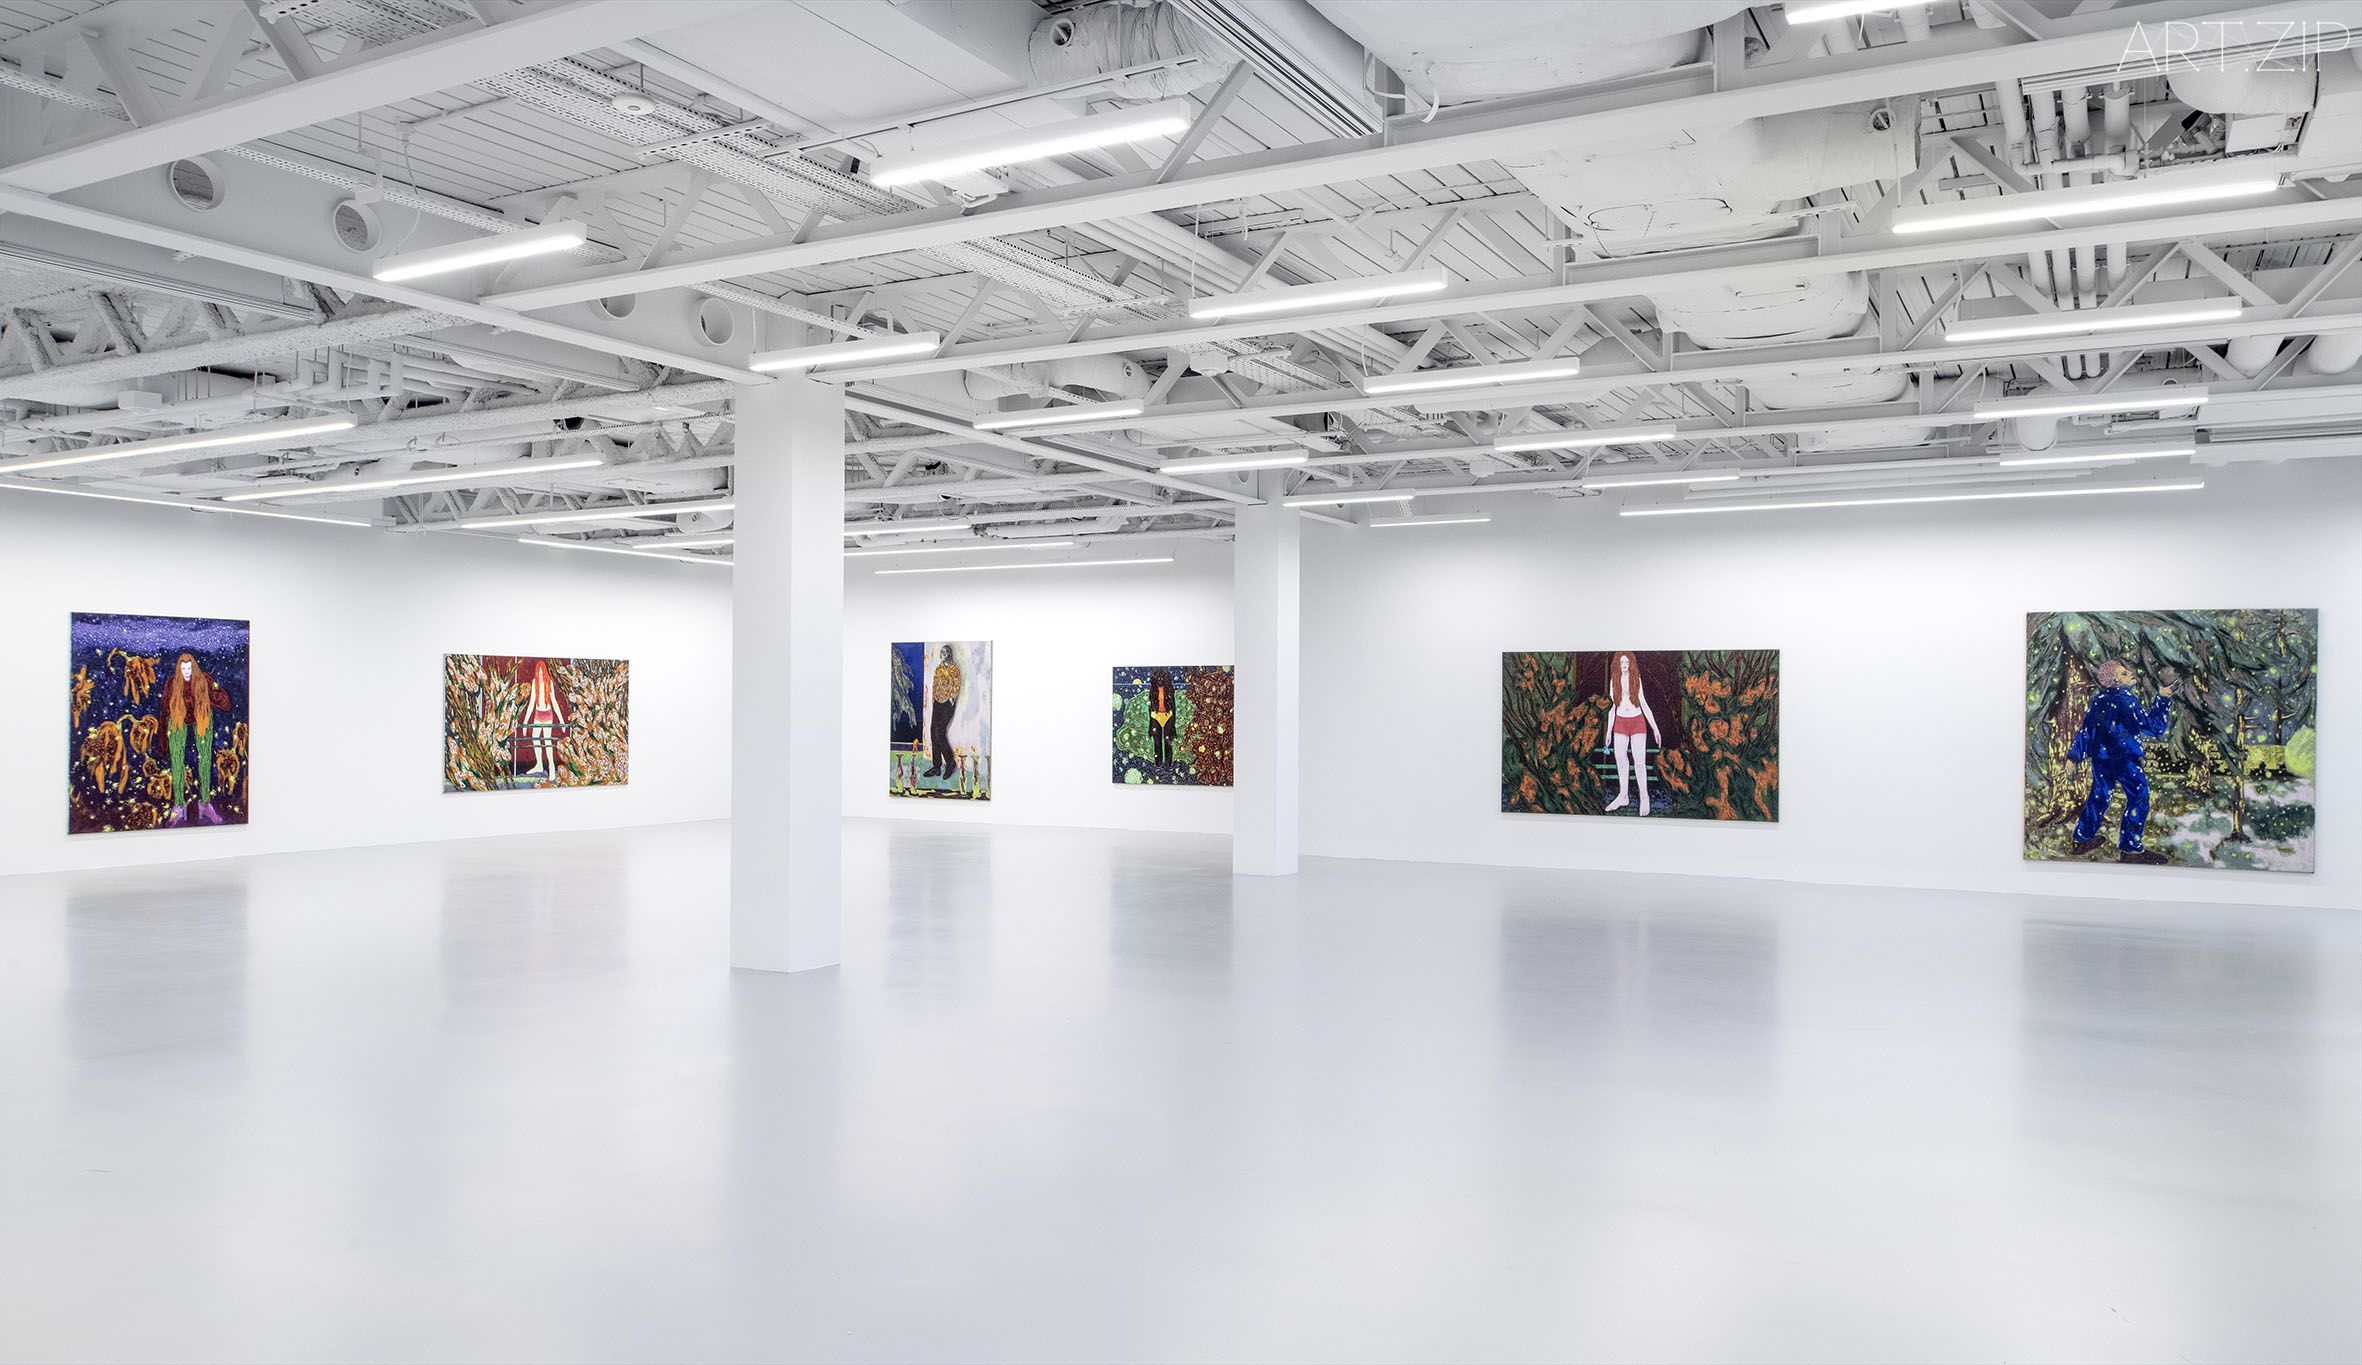 Omar El Lahib's new paintings in Saatchi Yates' new space © Saatchi Yates